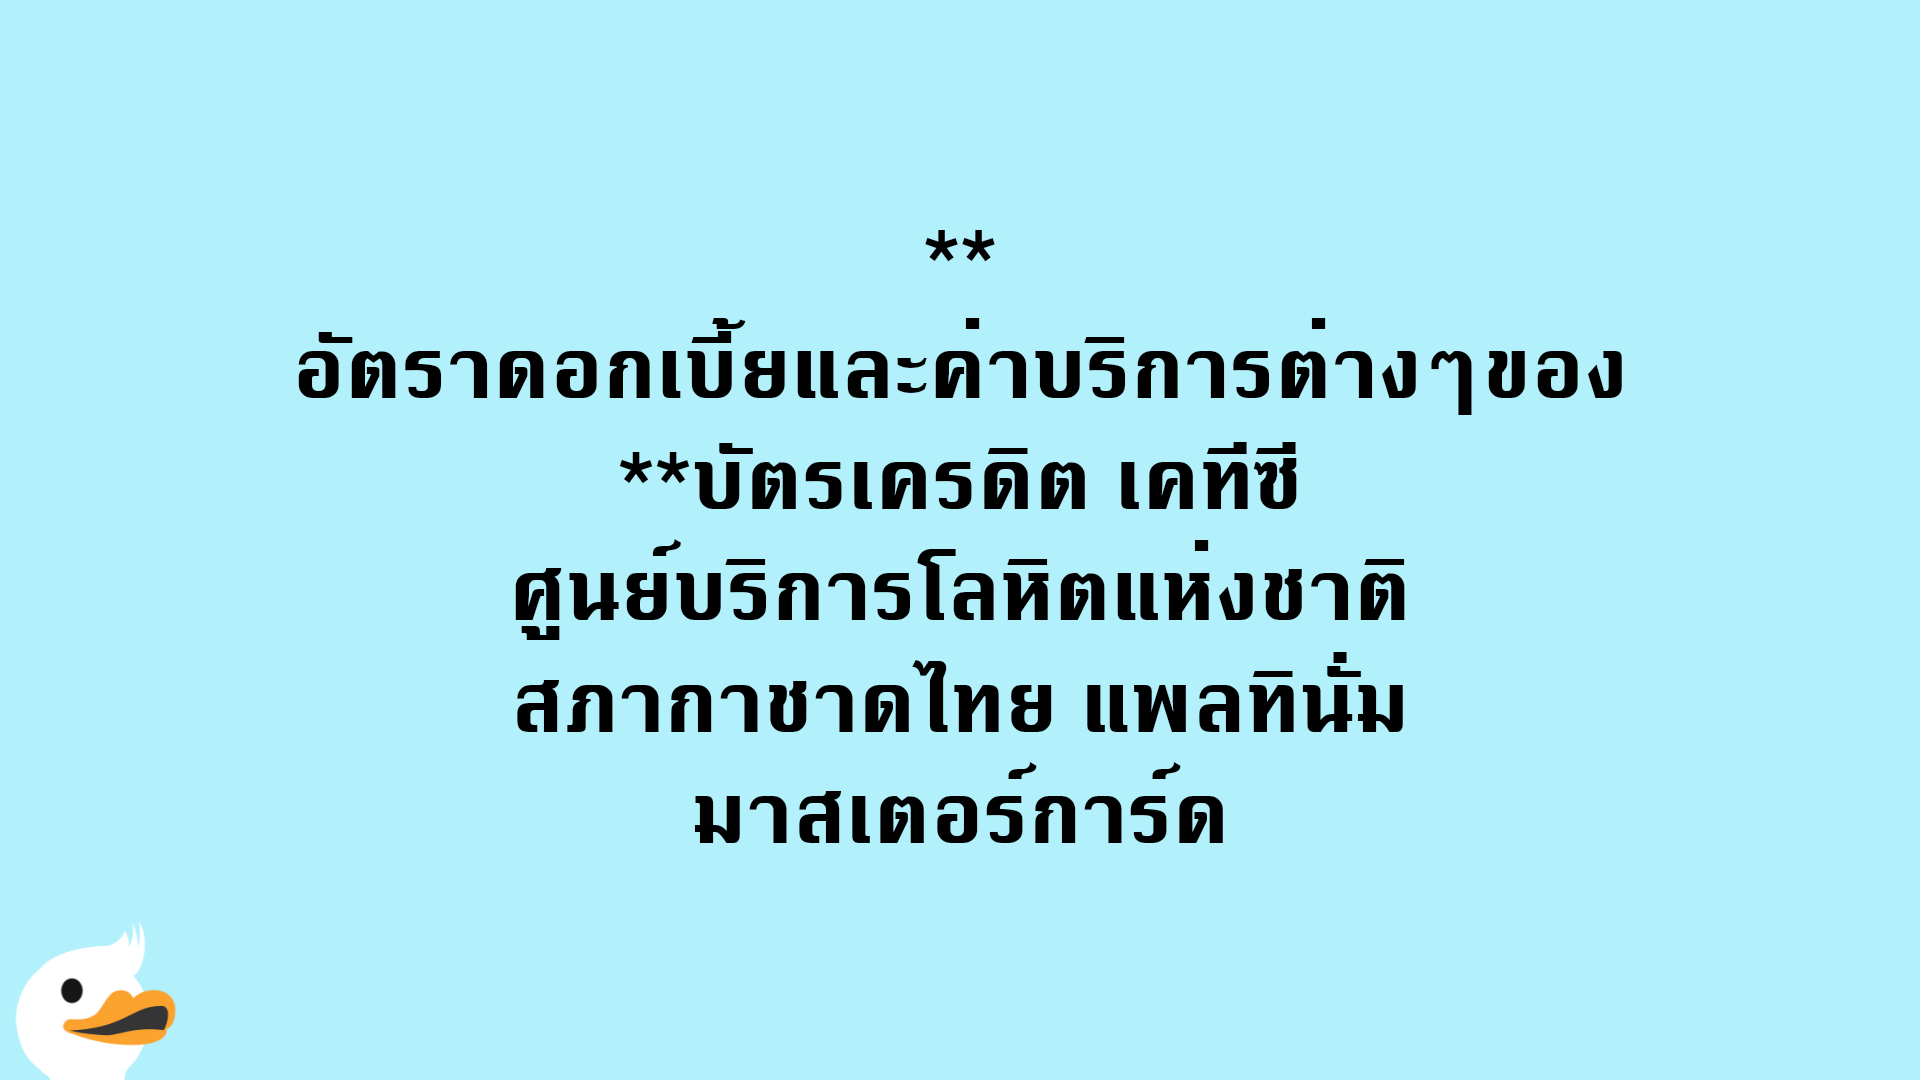 อัตราดอกเบี้ยและค่าบริการต่างๆของบัตรเครดิต เคทีซี ศูนย์บริการโลหิตแห่งชาติ สภากาชาดไทย แพลทินั่ม มาสเตอร์การ์ด